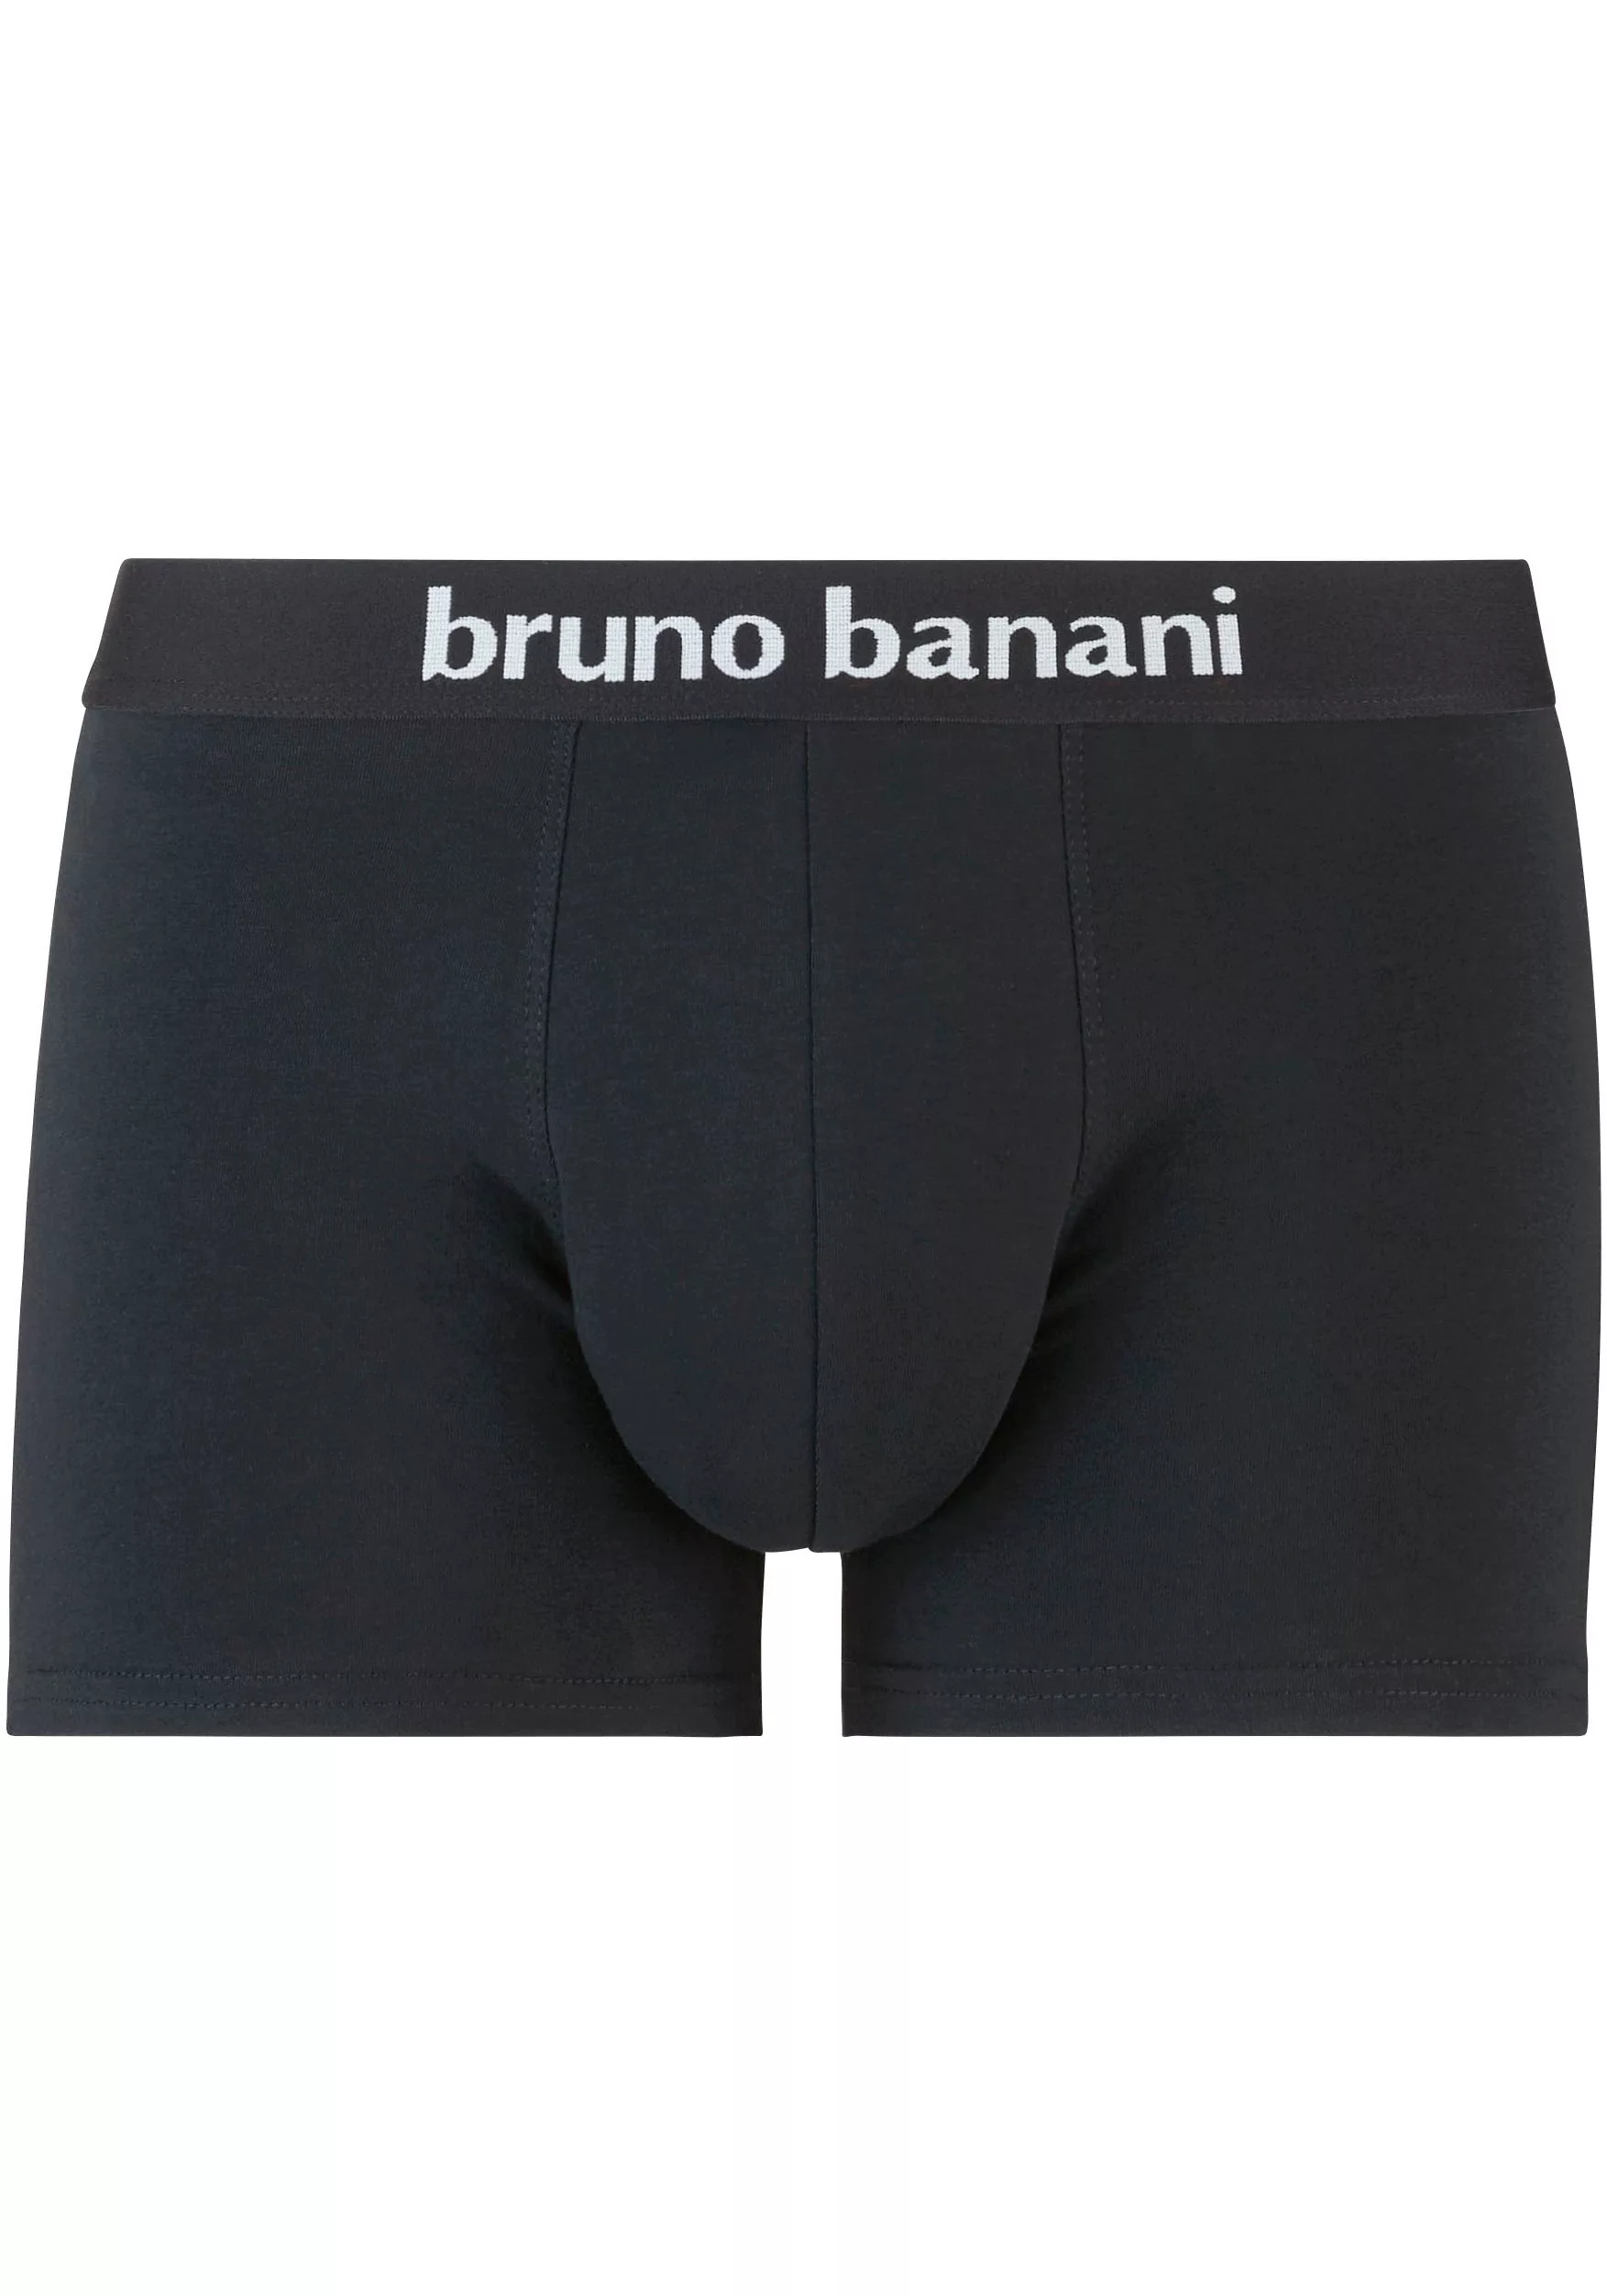 Bruno Banani Herren Boxershorts, 2er Pack - Flowing, Baumwolle Schwarz/Logo günstig online kaufen